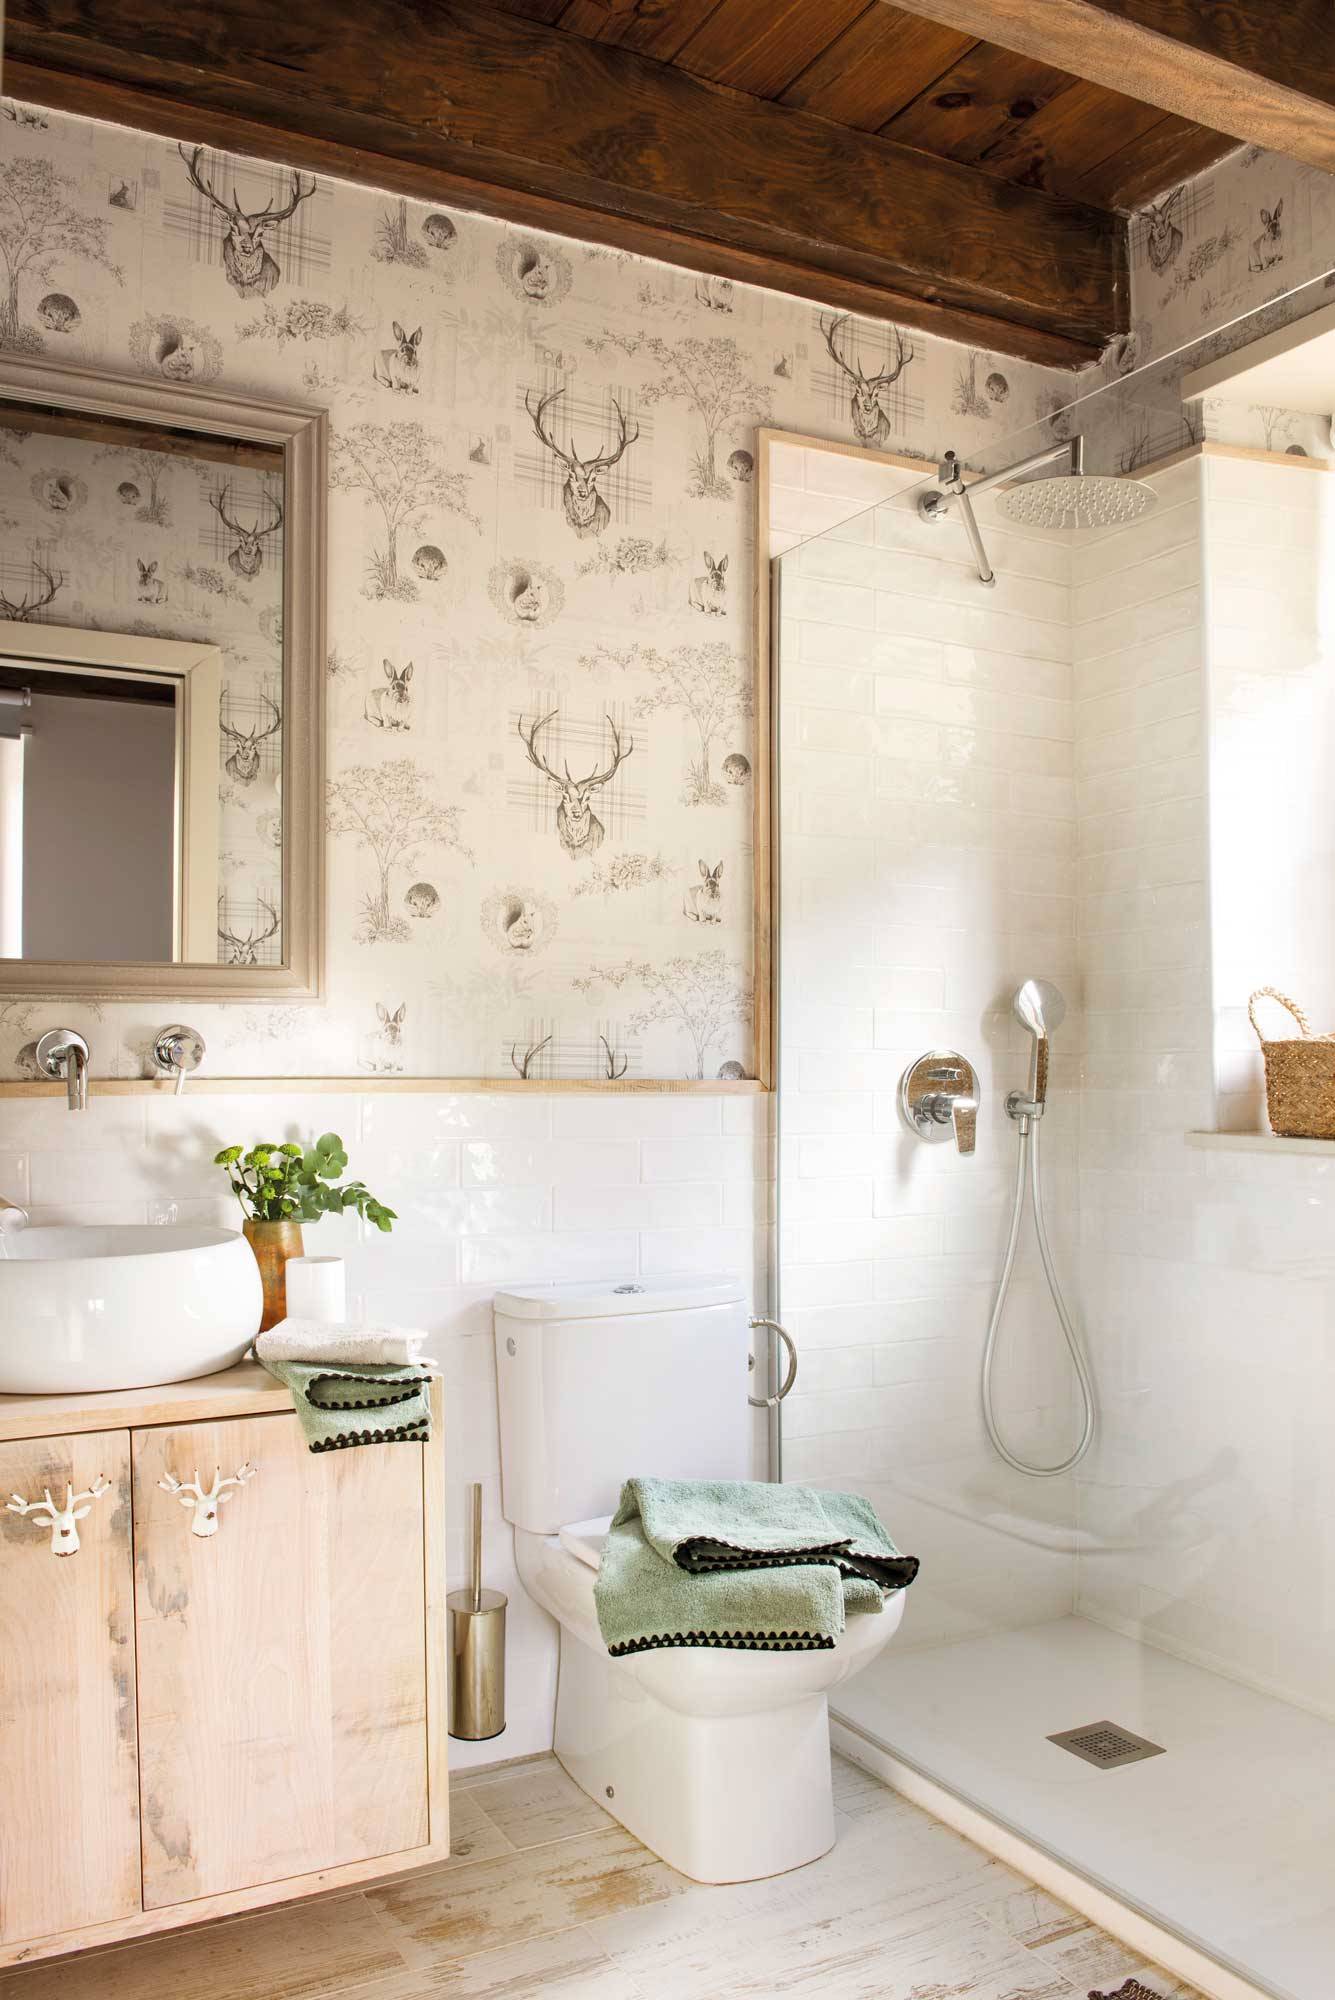 Baño reformado con estilo rústico con mueble suspendido, ducha con mampara, arrimadero y papel pintado. 